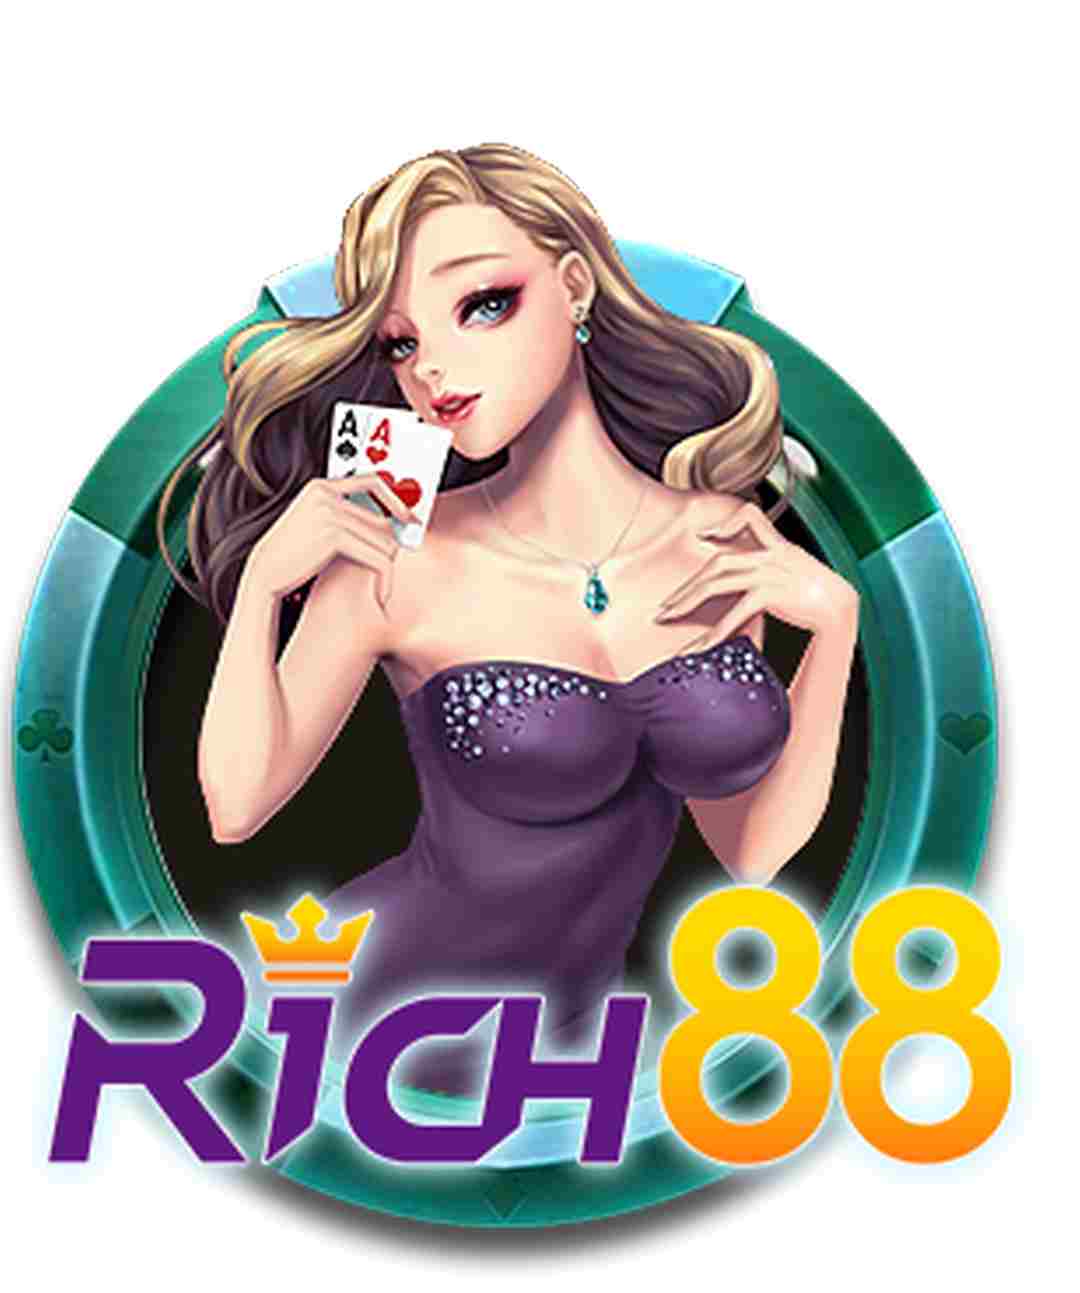 RICH88 (Chess) - Điểm cá cược thú vị nhất thị trường